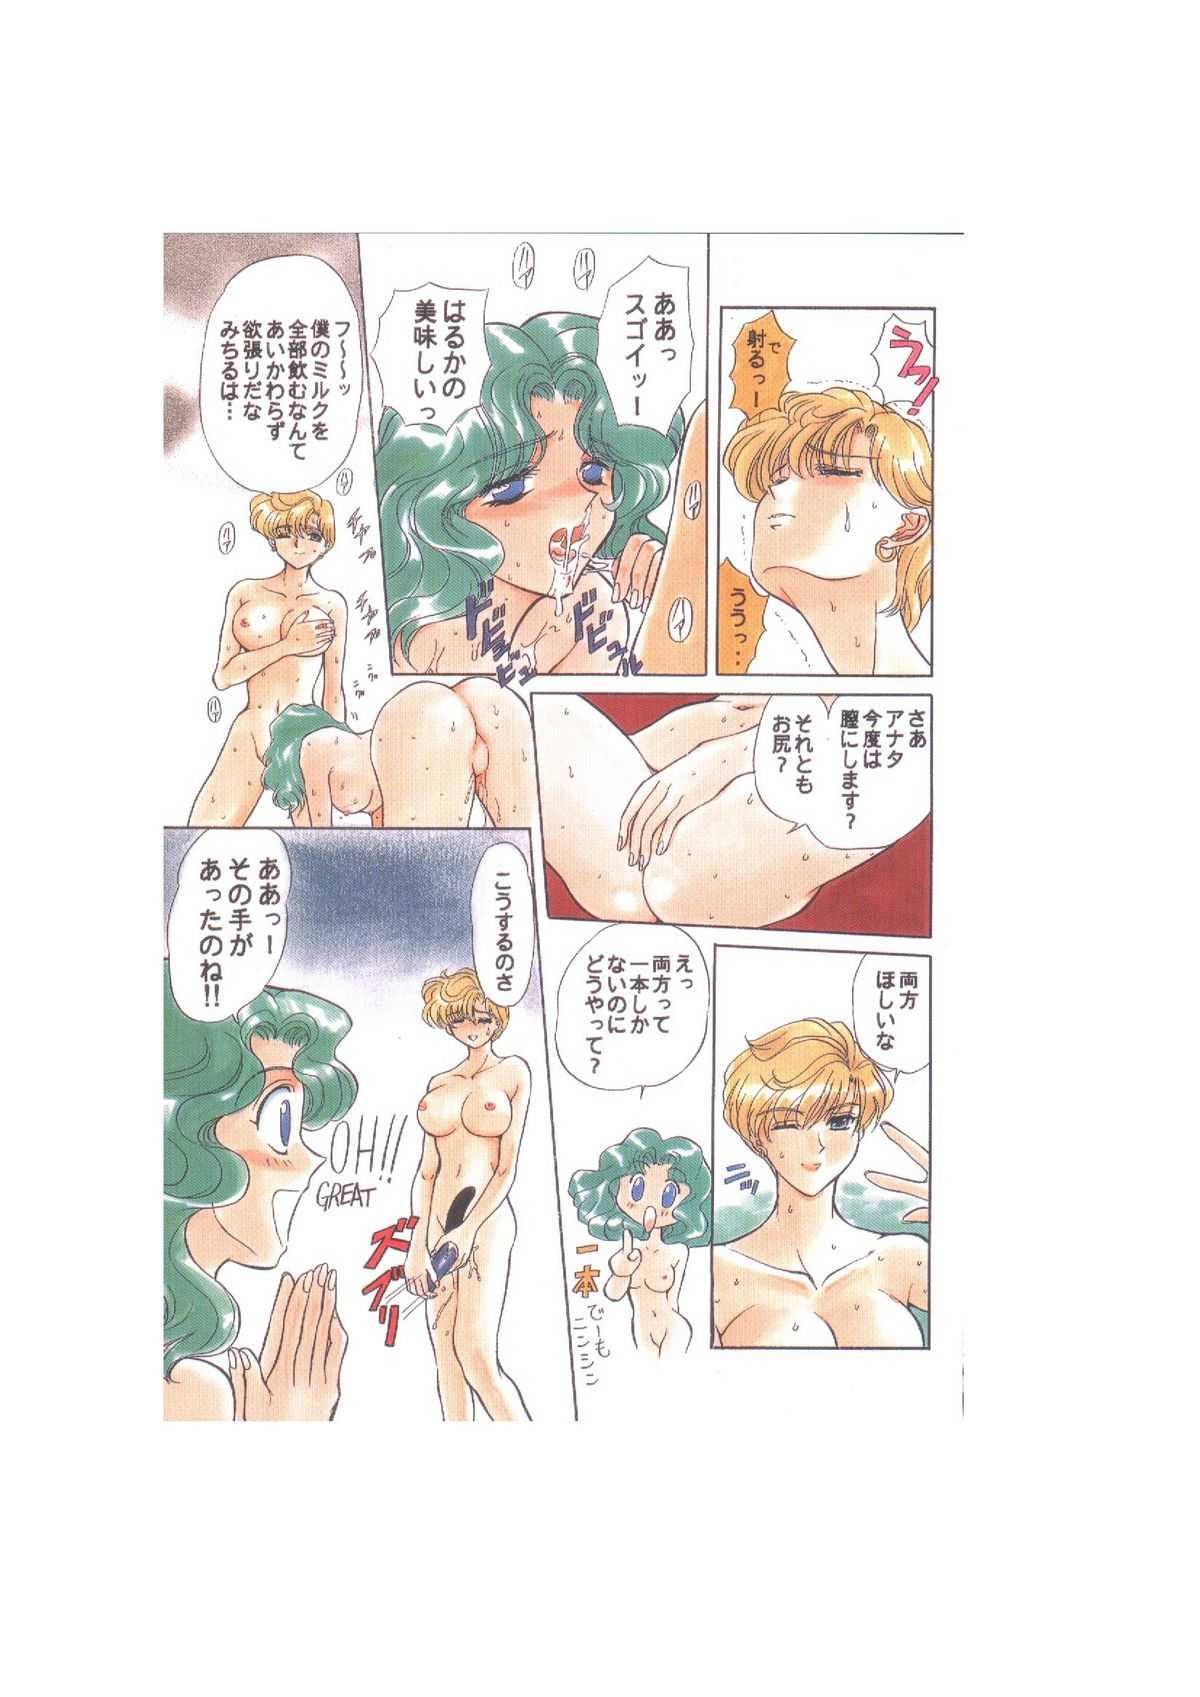 サディスティック-天空の章- Sailor Moon - Global One - Sadistic Tenku no shou 